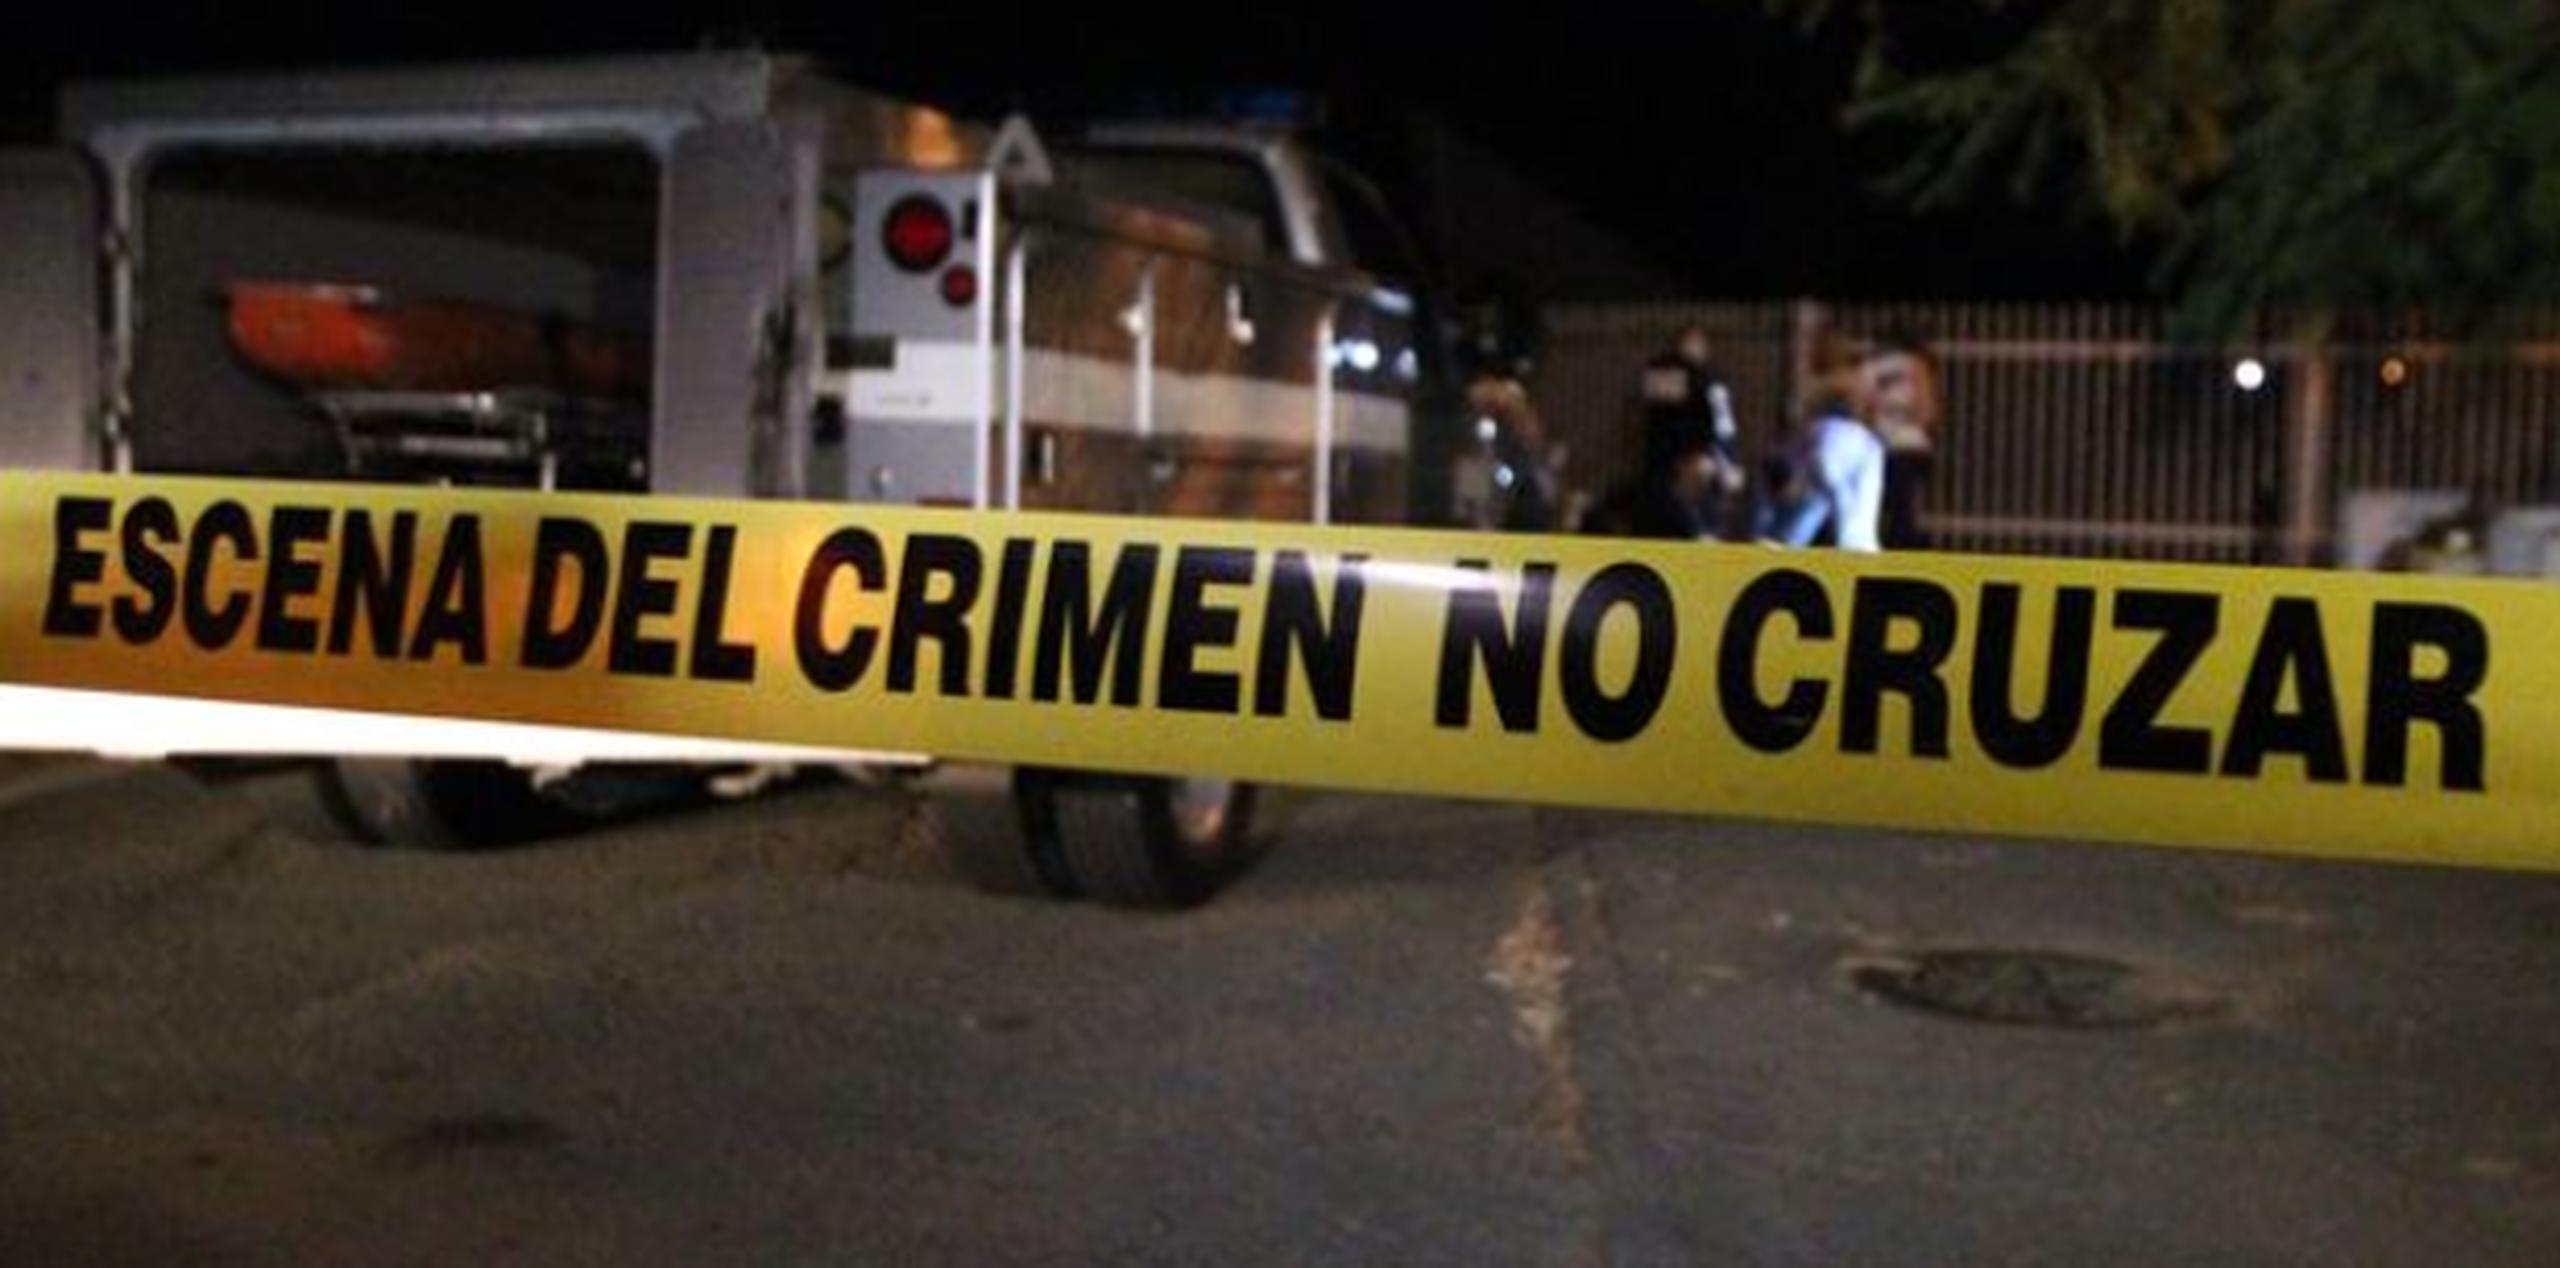 Durante el fin de semana se reportaron 12 heridos de bala, en Toa Baja, Guaynabo, Juana Díaz, Puerto Nuevo, Ponce, Cataño, Isabela y Salinas. (Archivo)